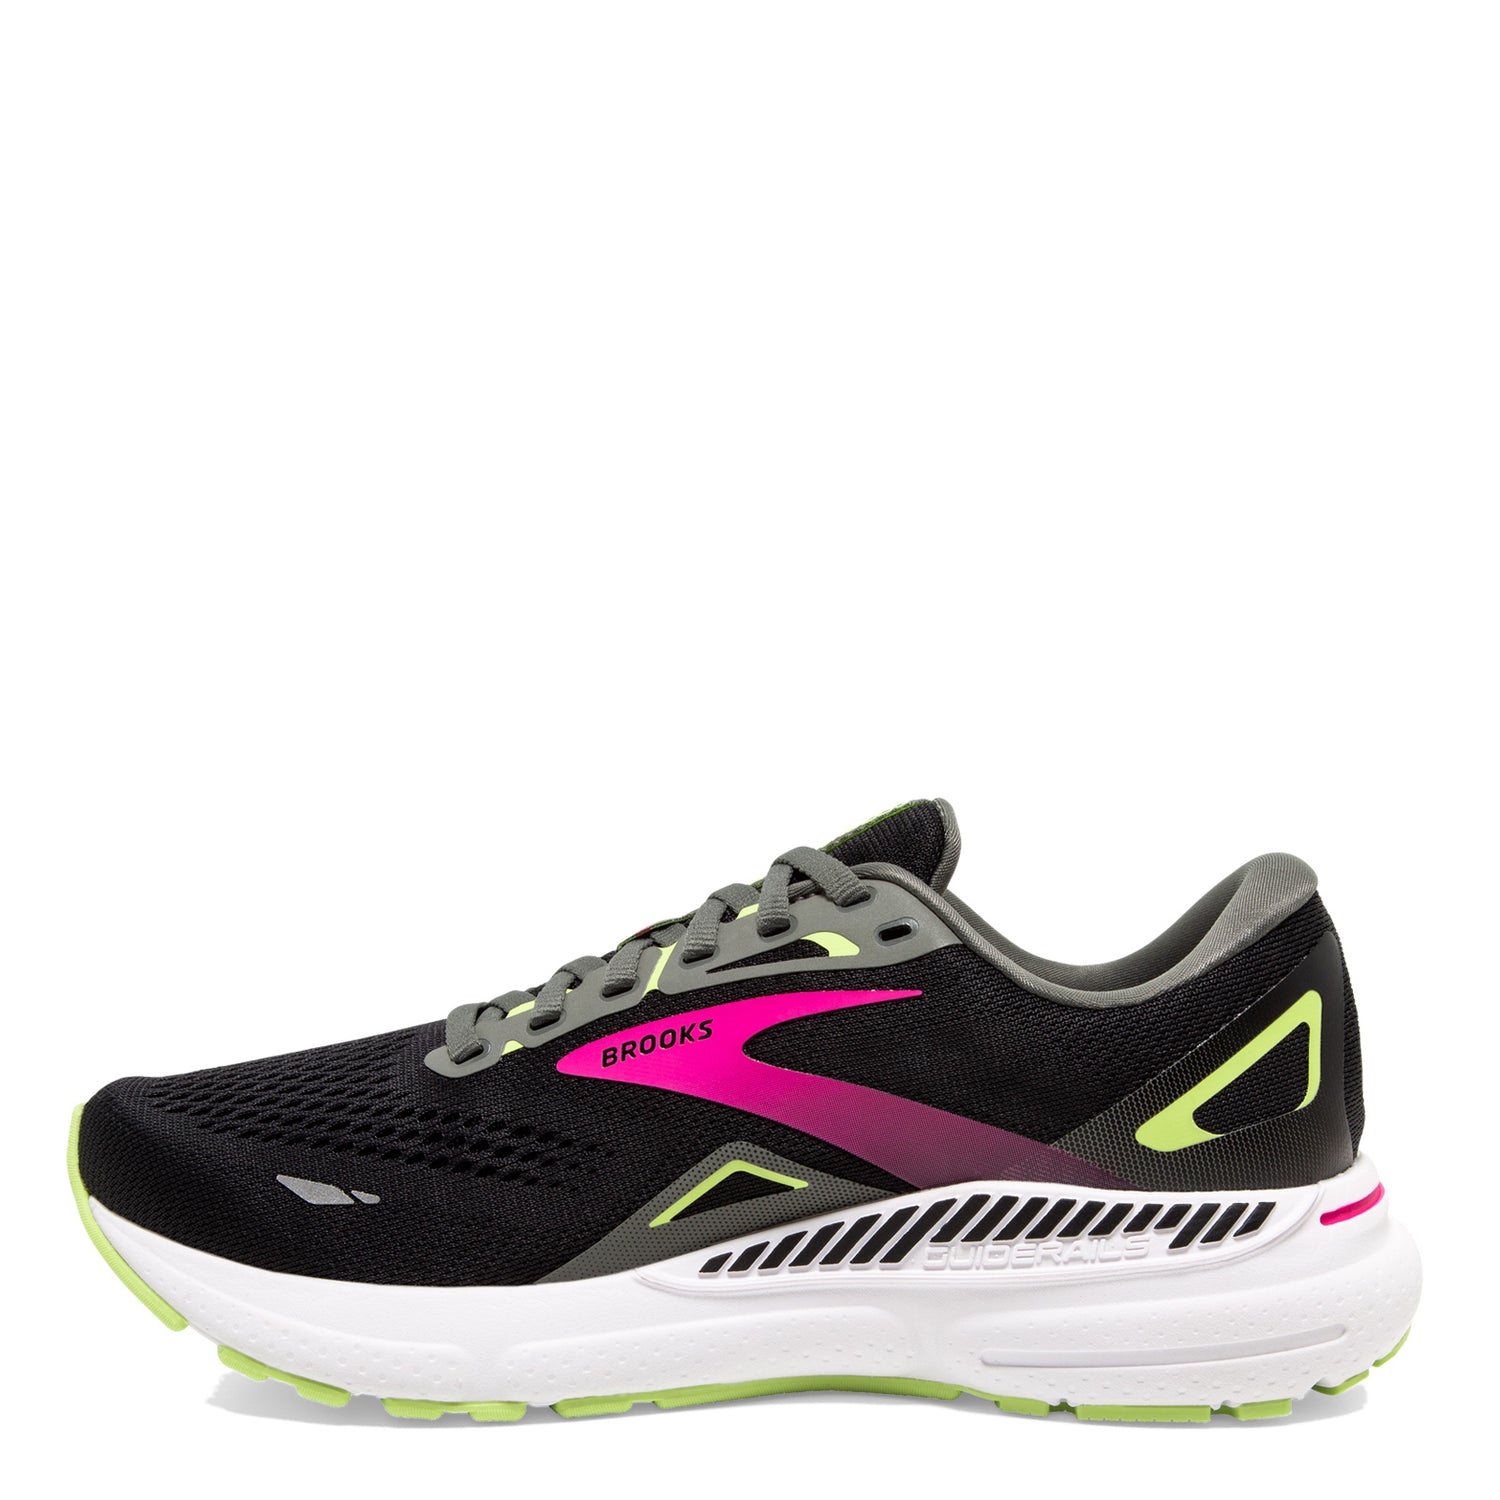 Peltz Shoes  Women's Brooks Adrenaline GTS 23 Running Shoe - Narrow Width Black/Pink/Green 120381 2A 037